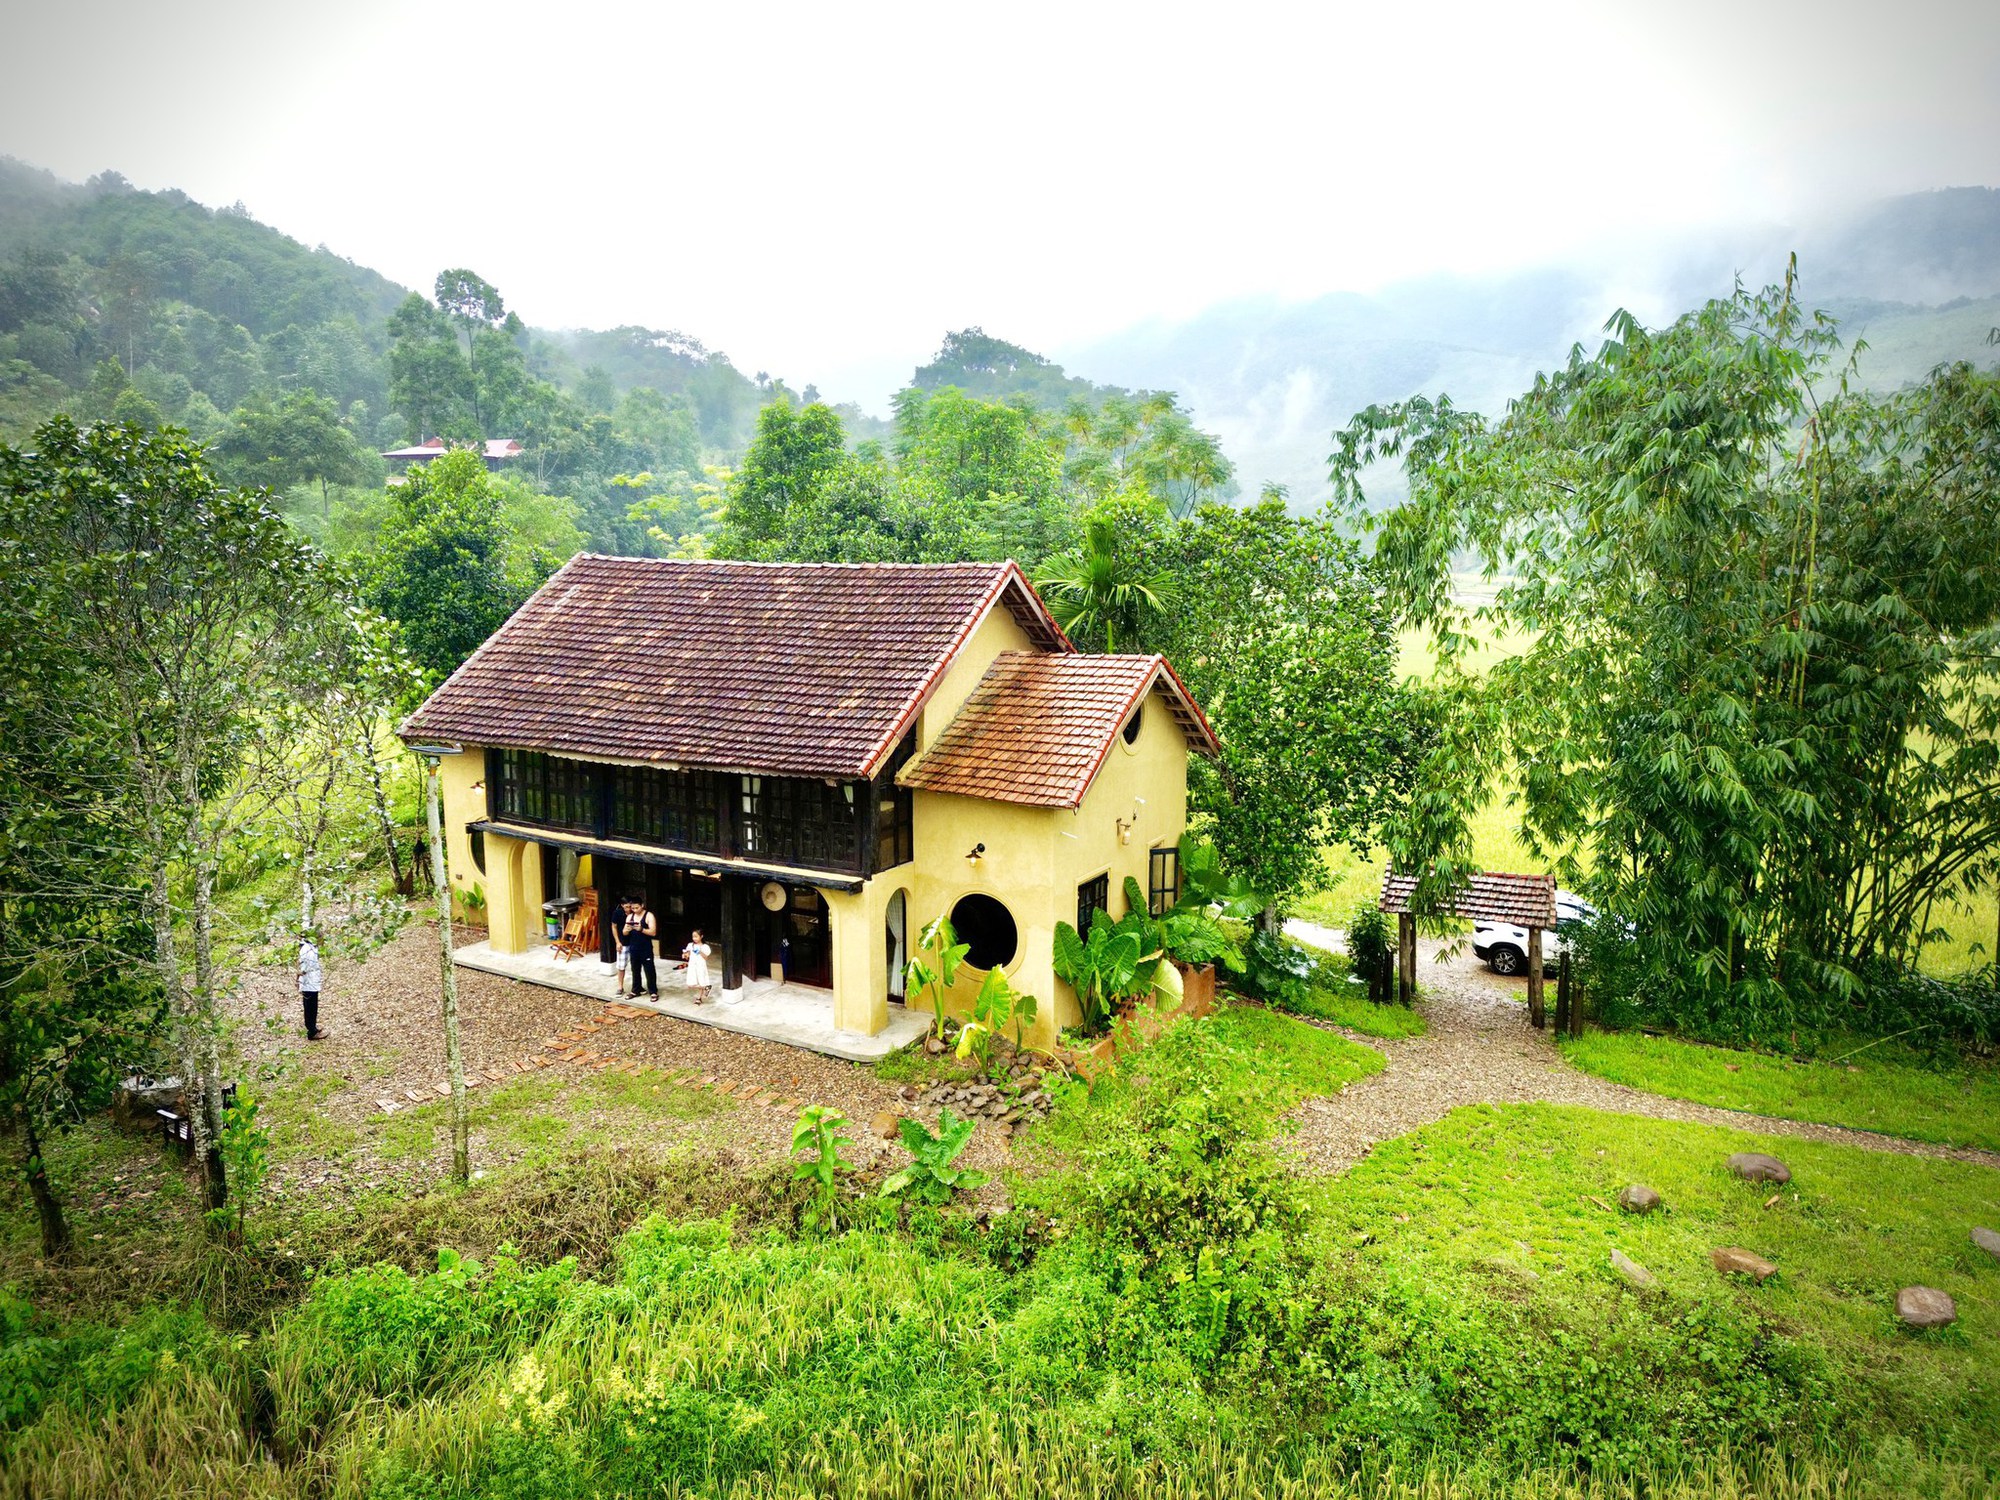 Mỗi căn nhà ở làng quê đều mang sắc màu độc đáo, đầy tình cảm, và sự giản dị. Hãy khám phá thiết kế ngôi nhà ở làng quê và tìm hiểu thêm về nét đẹp truyền thống Việt Nam.